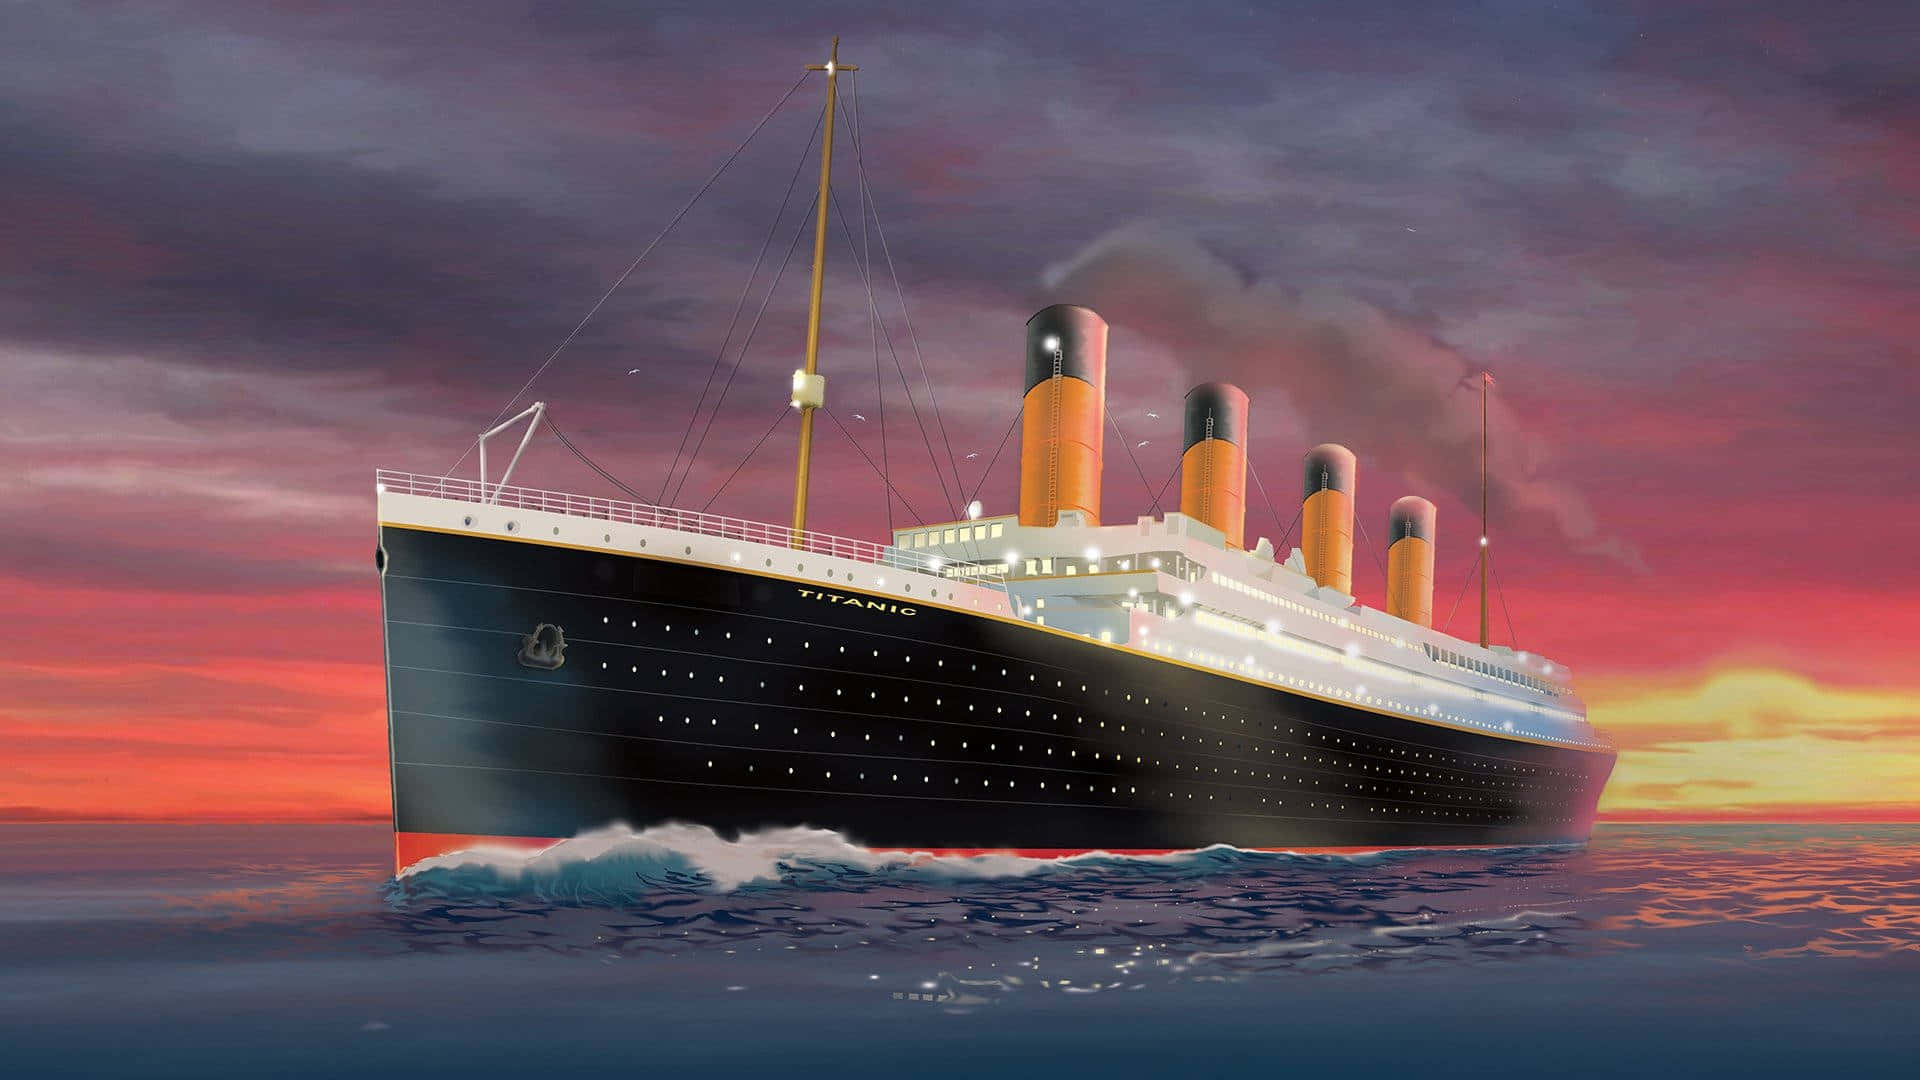 The iconic, Titanic cruise ship